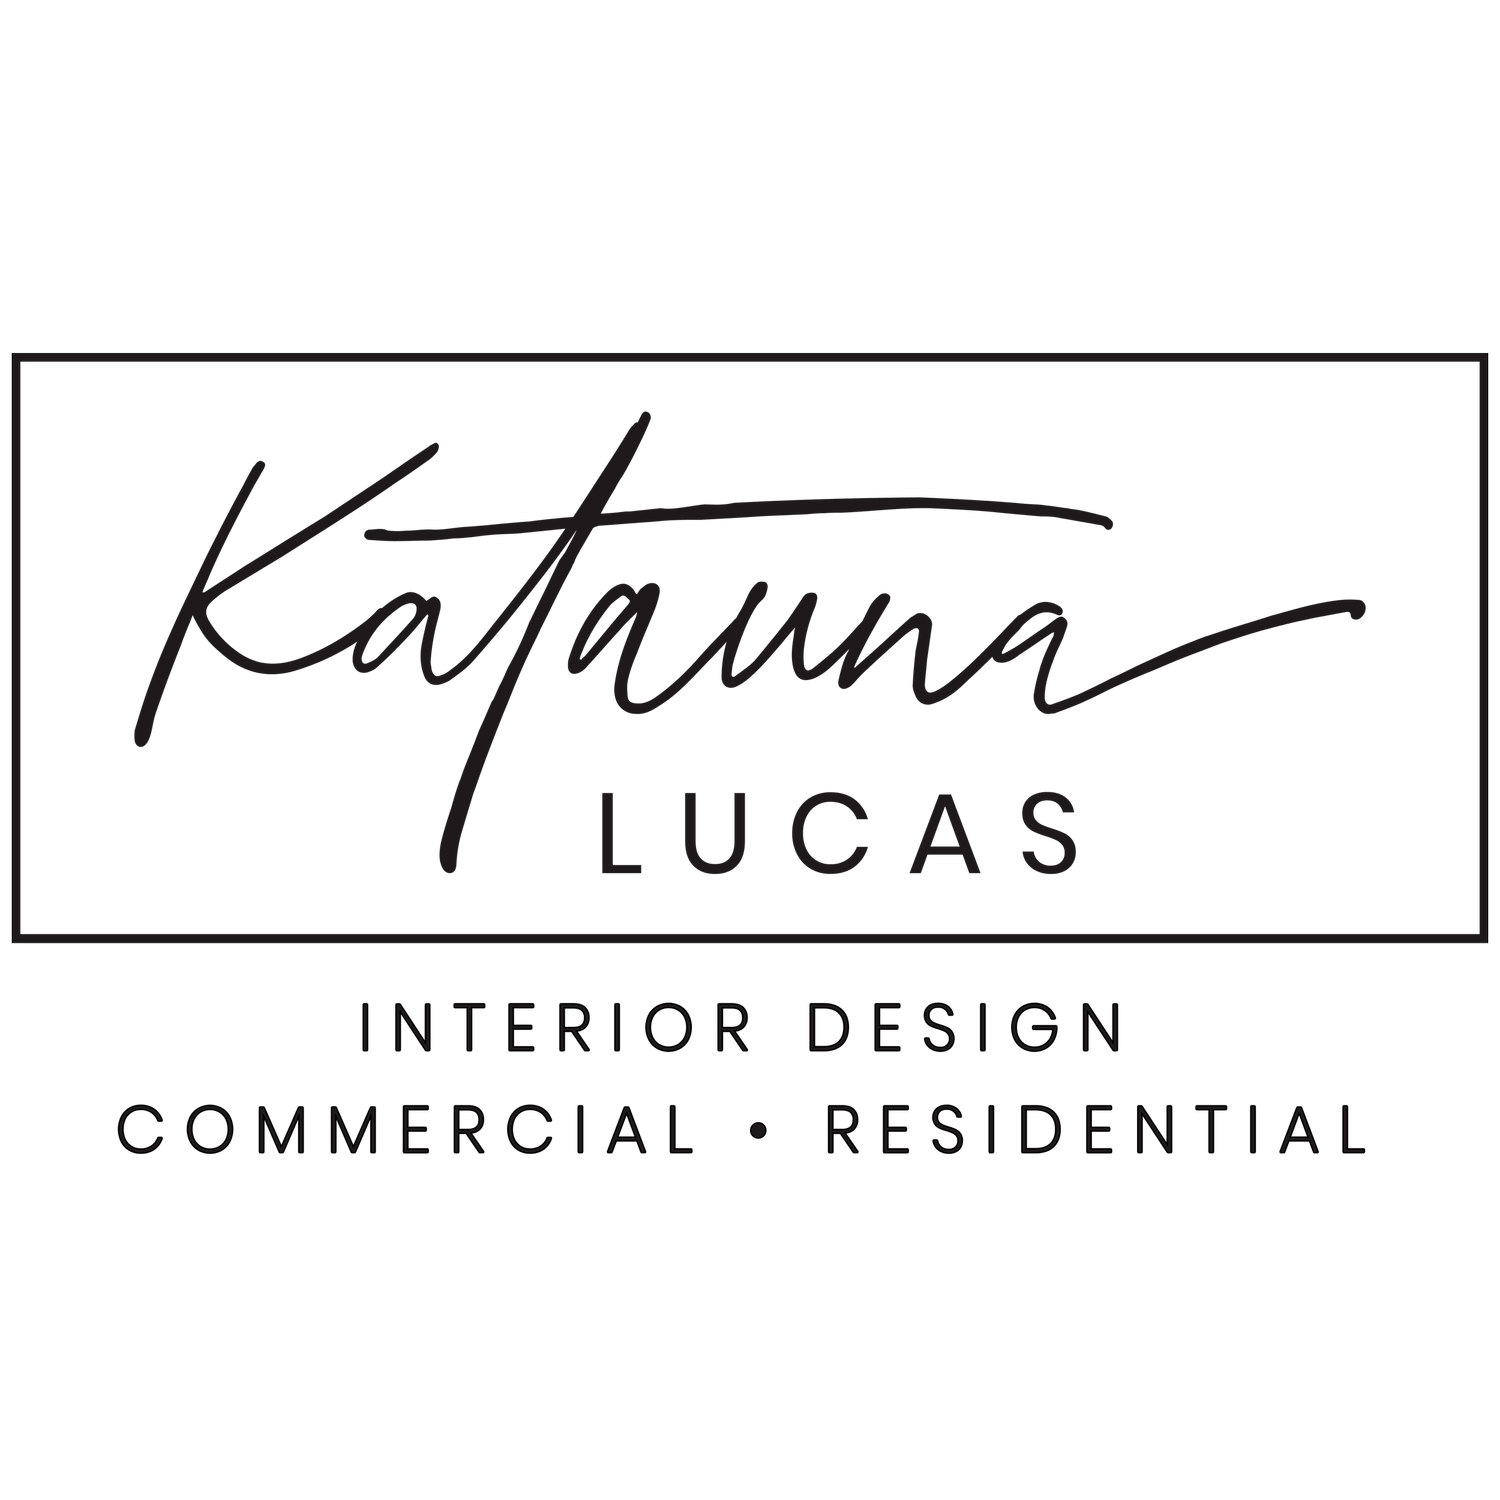 Katauna Lucas, Innovative Interiors - Farmington, NM - (505)402-8273 | ShowMeLocal.com